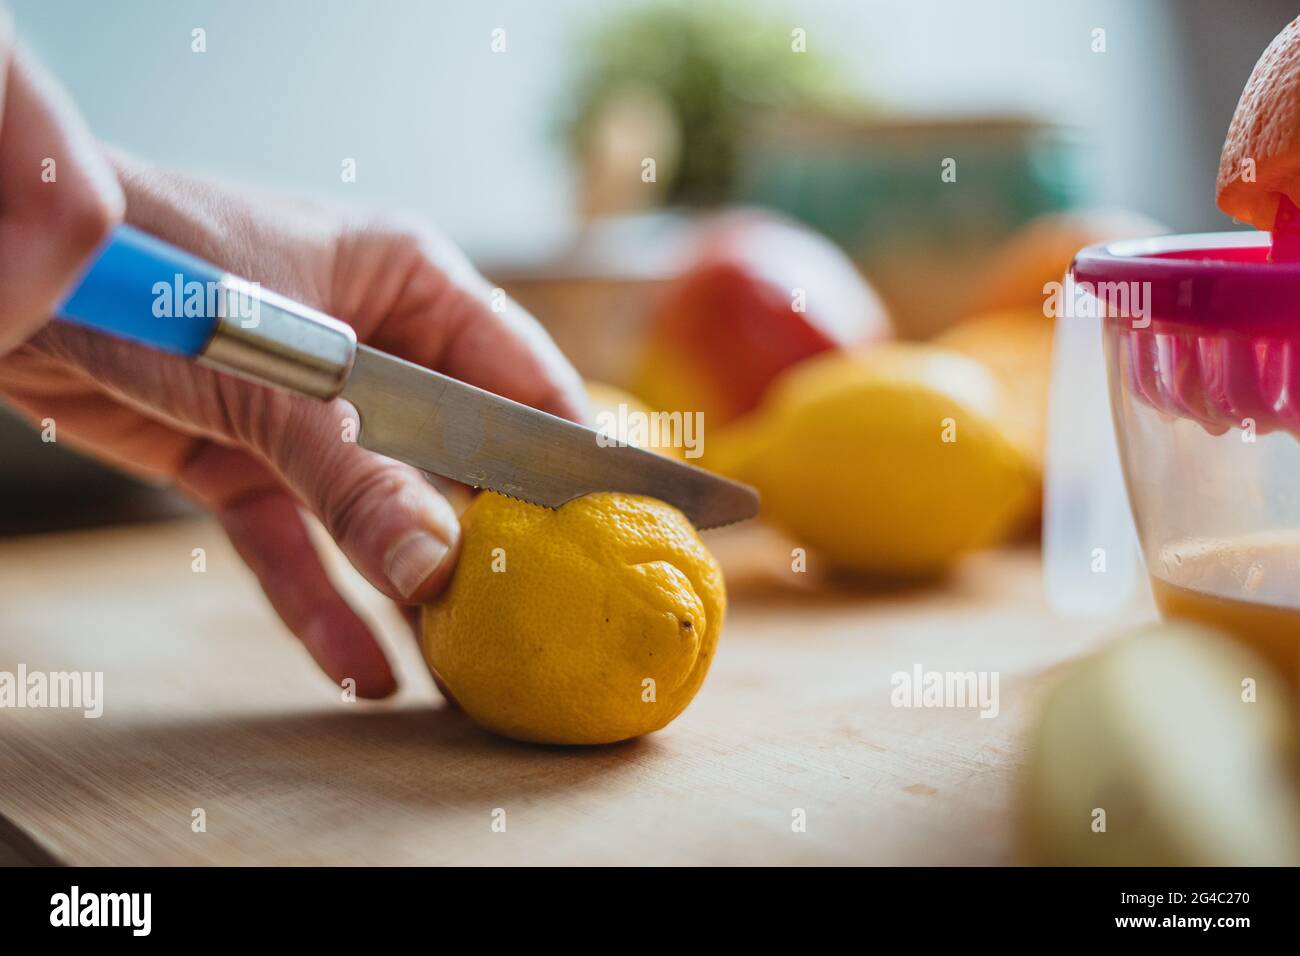 Eine Frau, die mit einem blauen Messer auf einem Holztisch, umgeben von anderen Früchten, eine Zitrone schneidet. Stockfoto